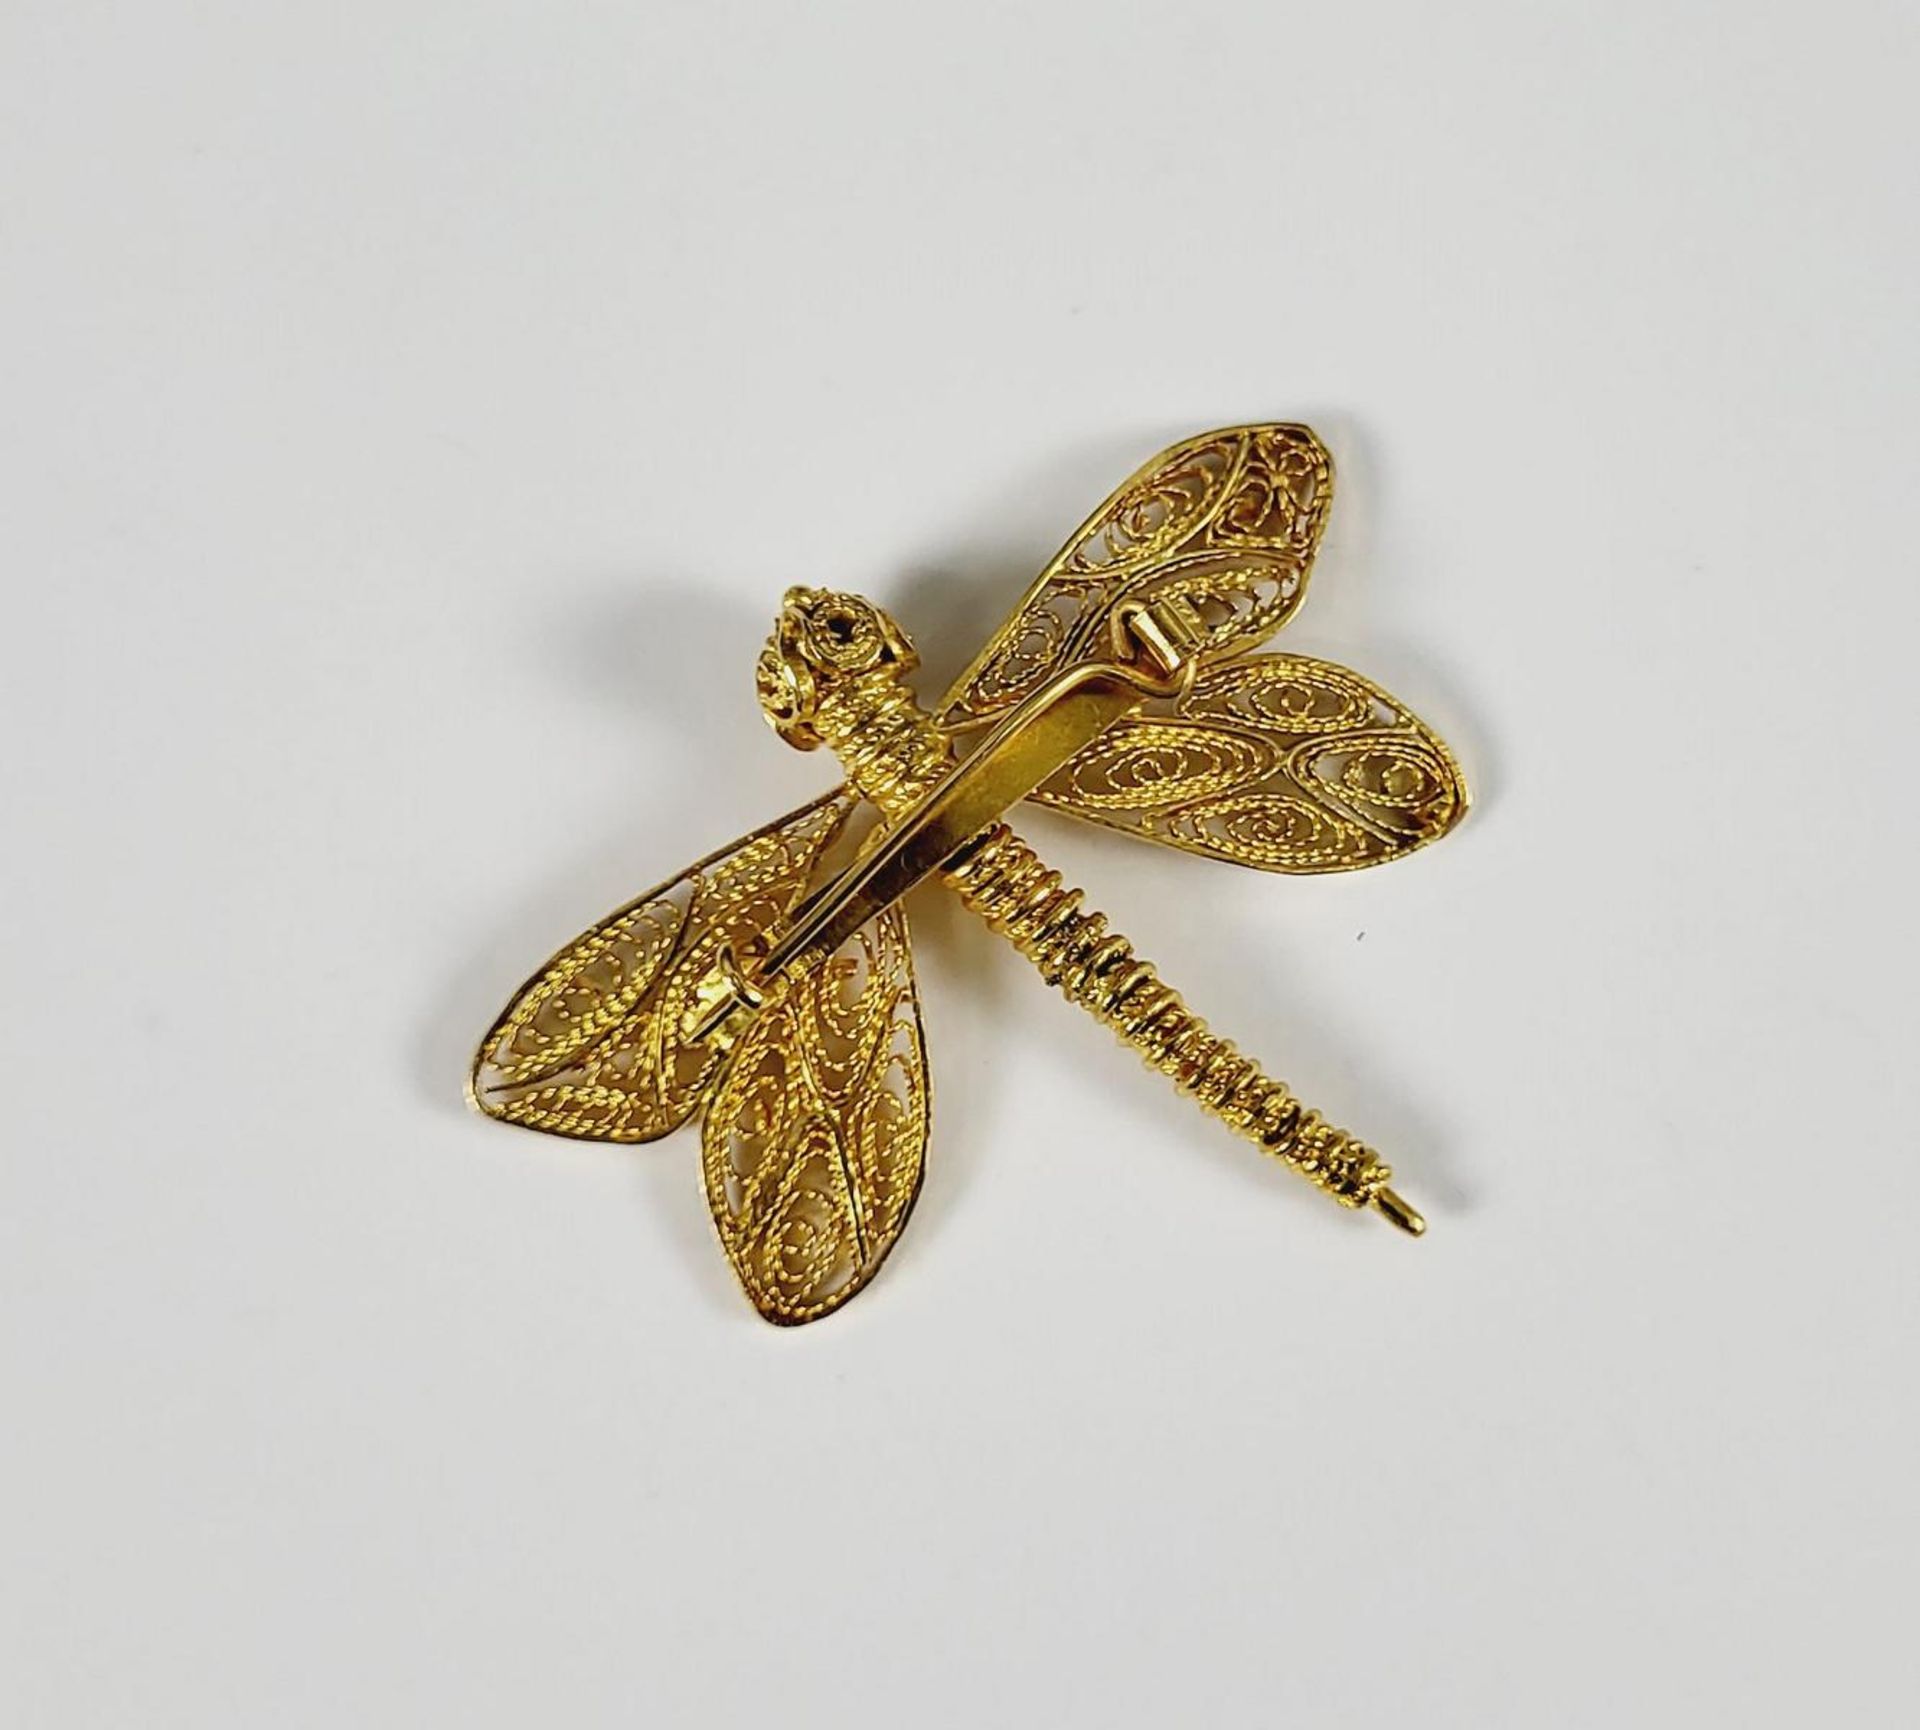 Brosche in Form einer Libelle, 14 Karat Gelbgold - Image 2 of 2